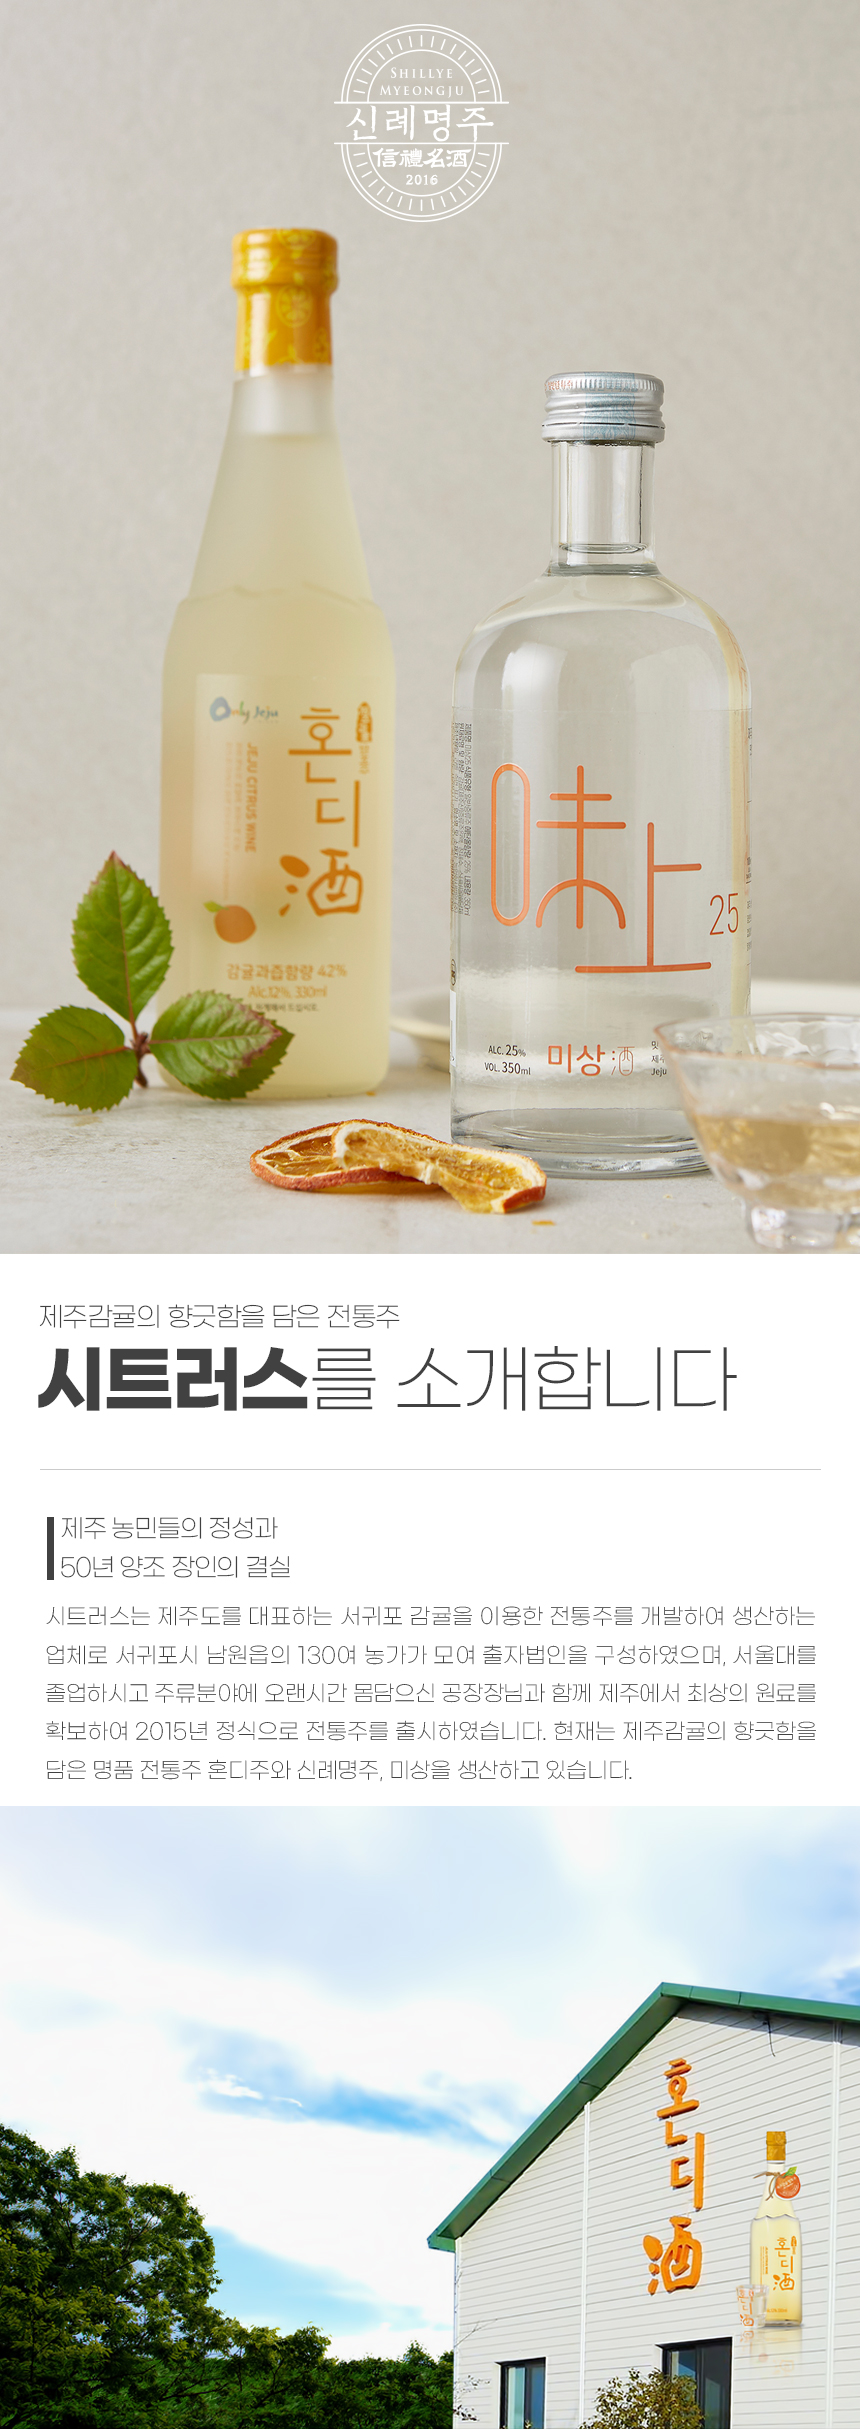 韓國食品-韓國濟州橘子發酵酒 Hondi (水果酒) 330ml